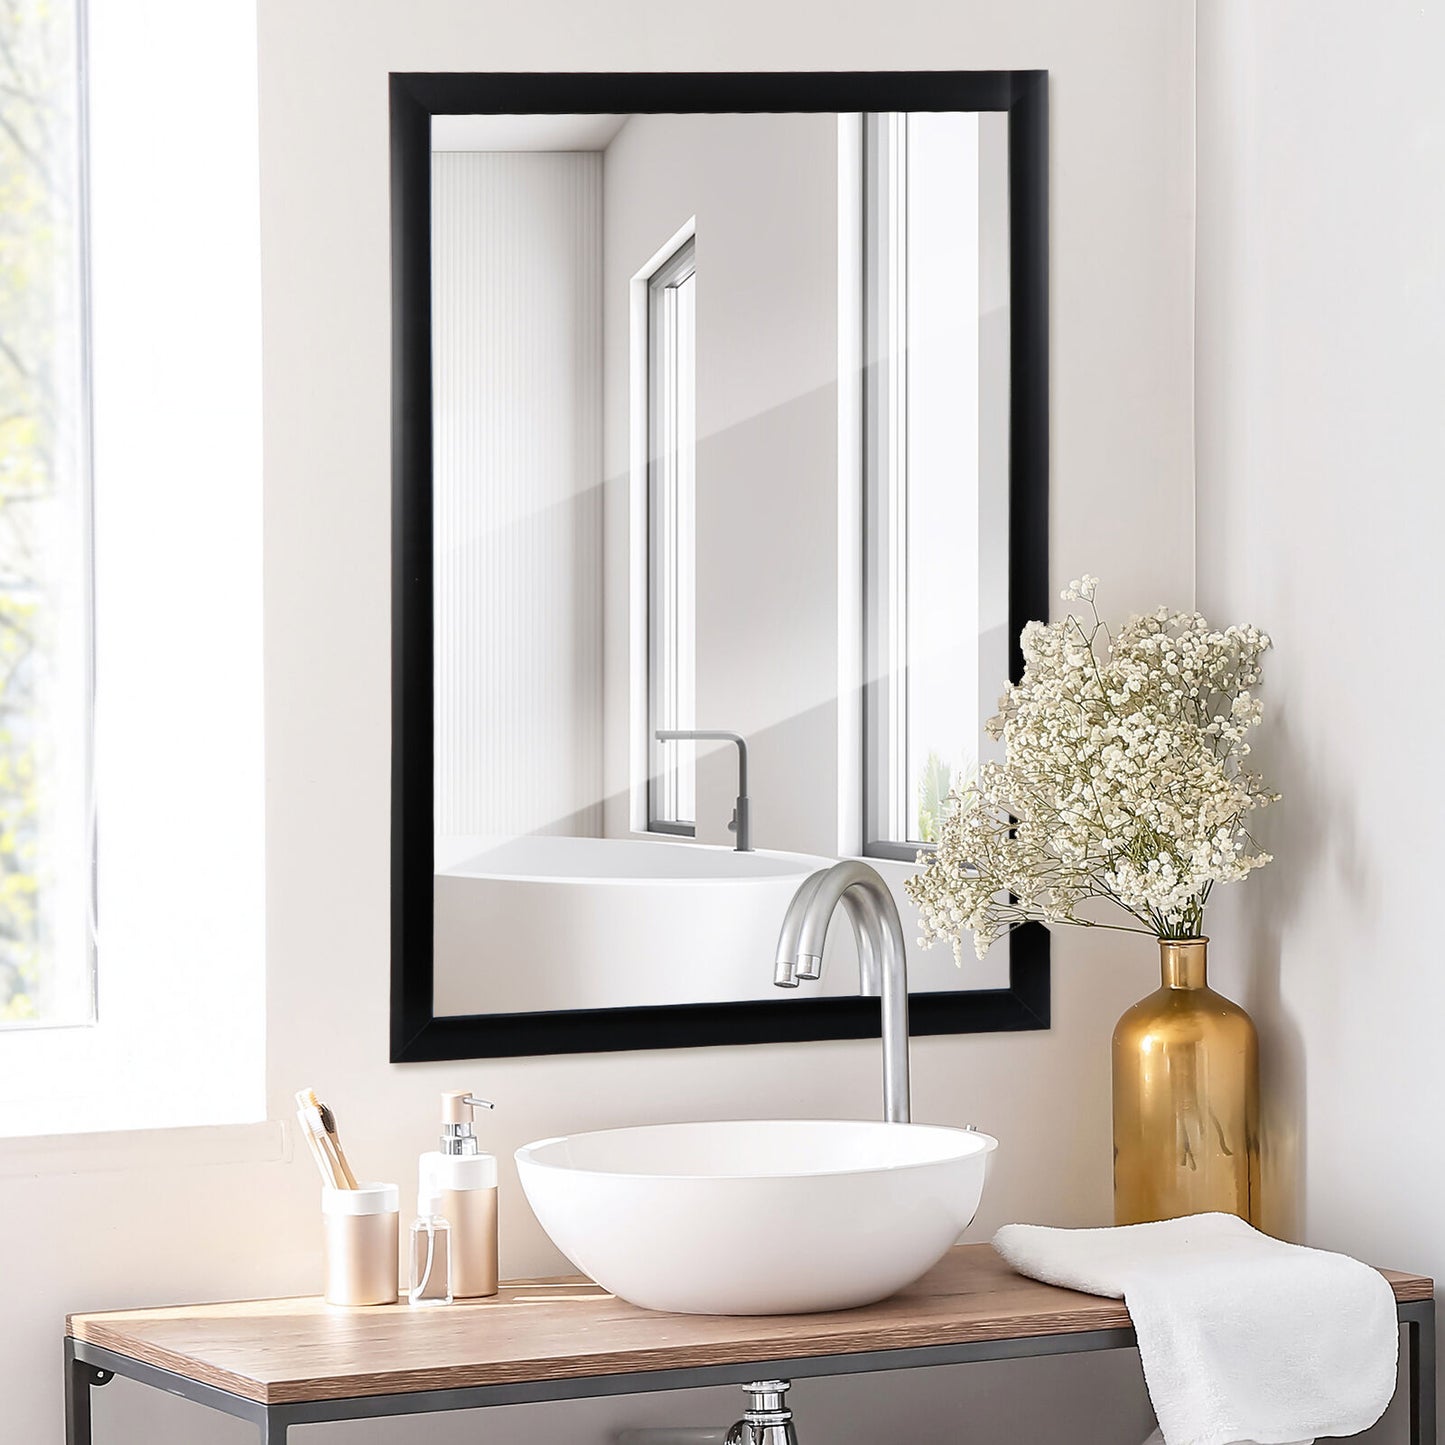 24"x36" Rectangular Modern Metal Frame Wall Mirror for Bathroom Washroom Black